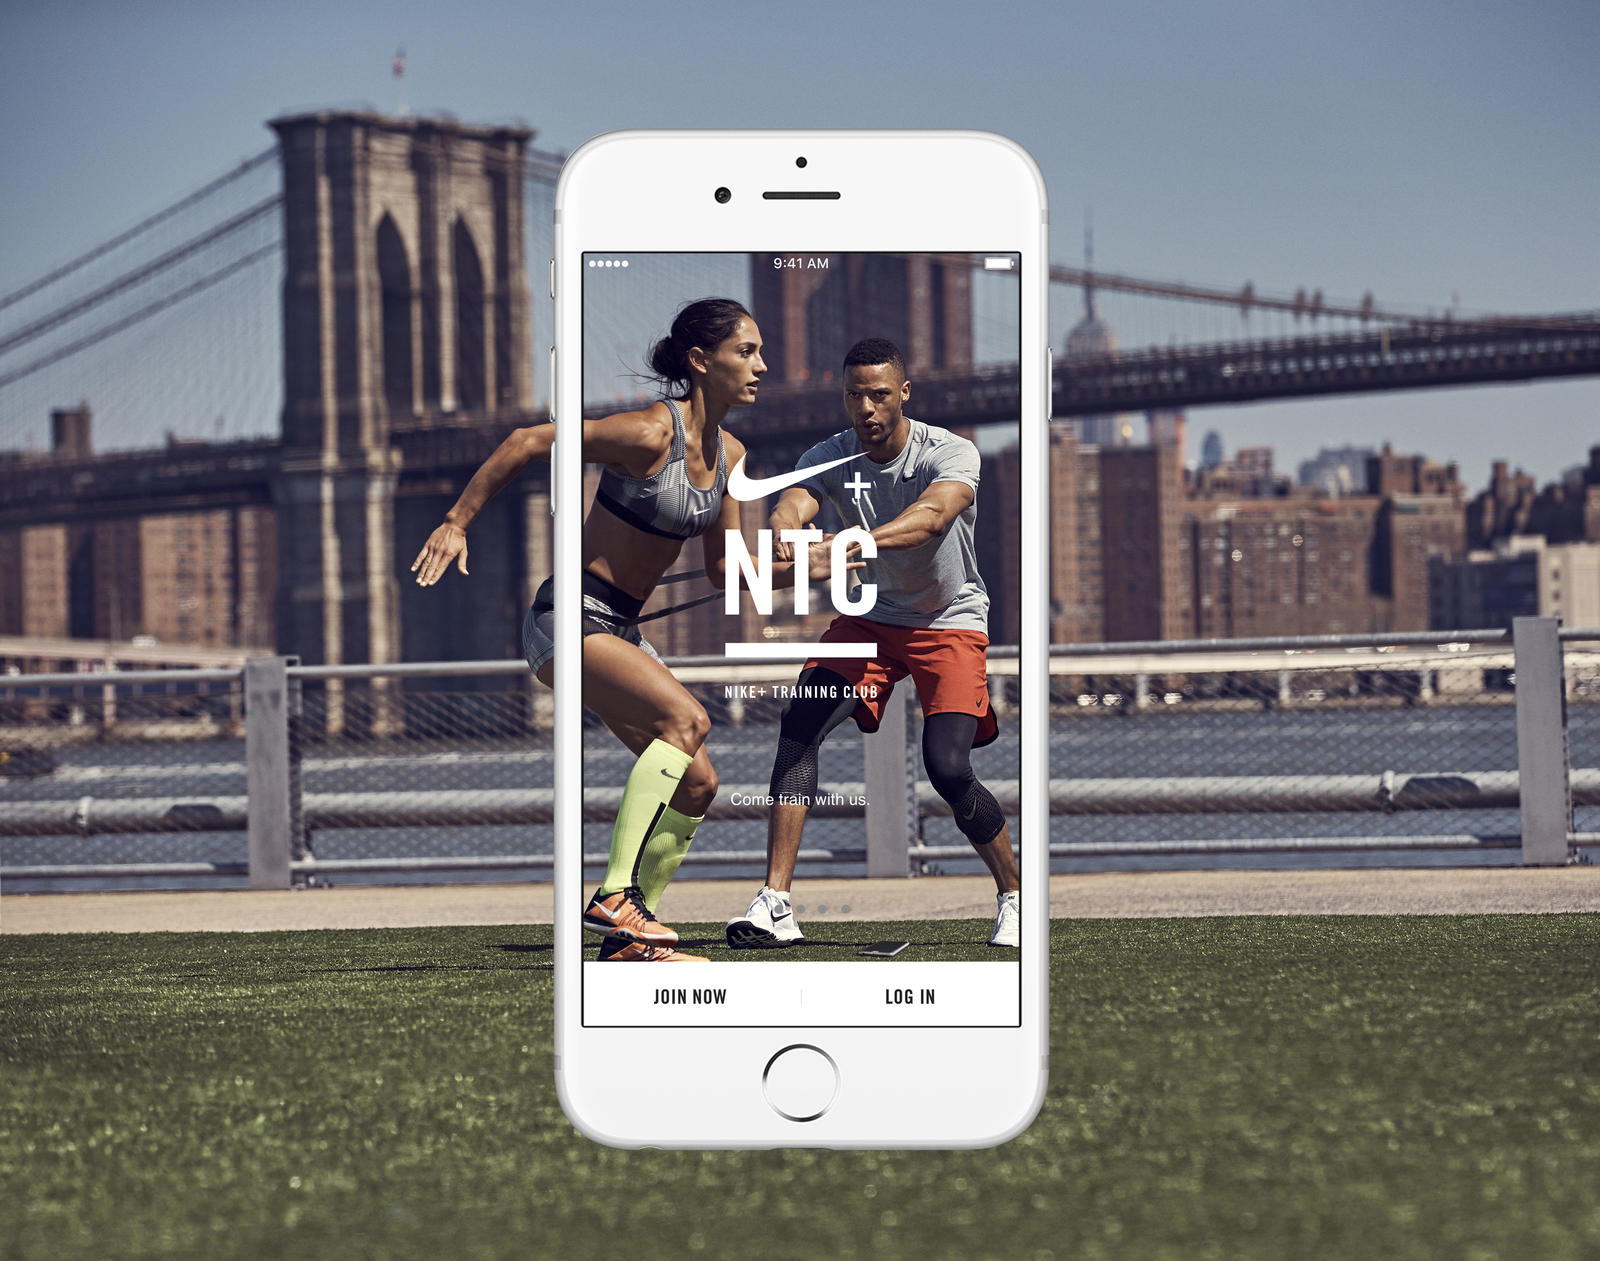 Скачать сейчас обновленное приложение NTC от Nike